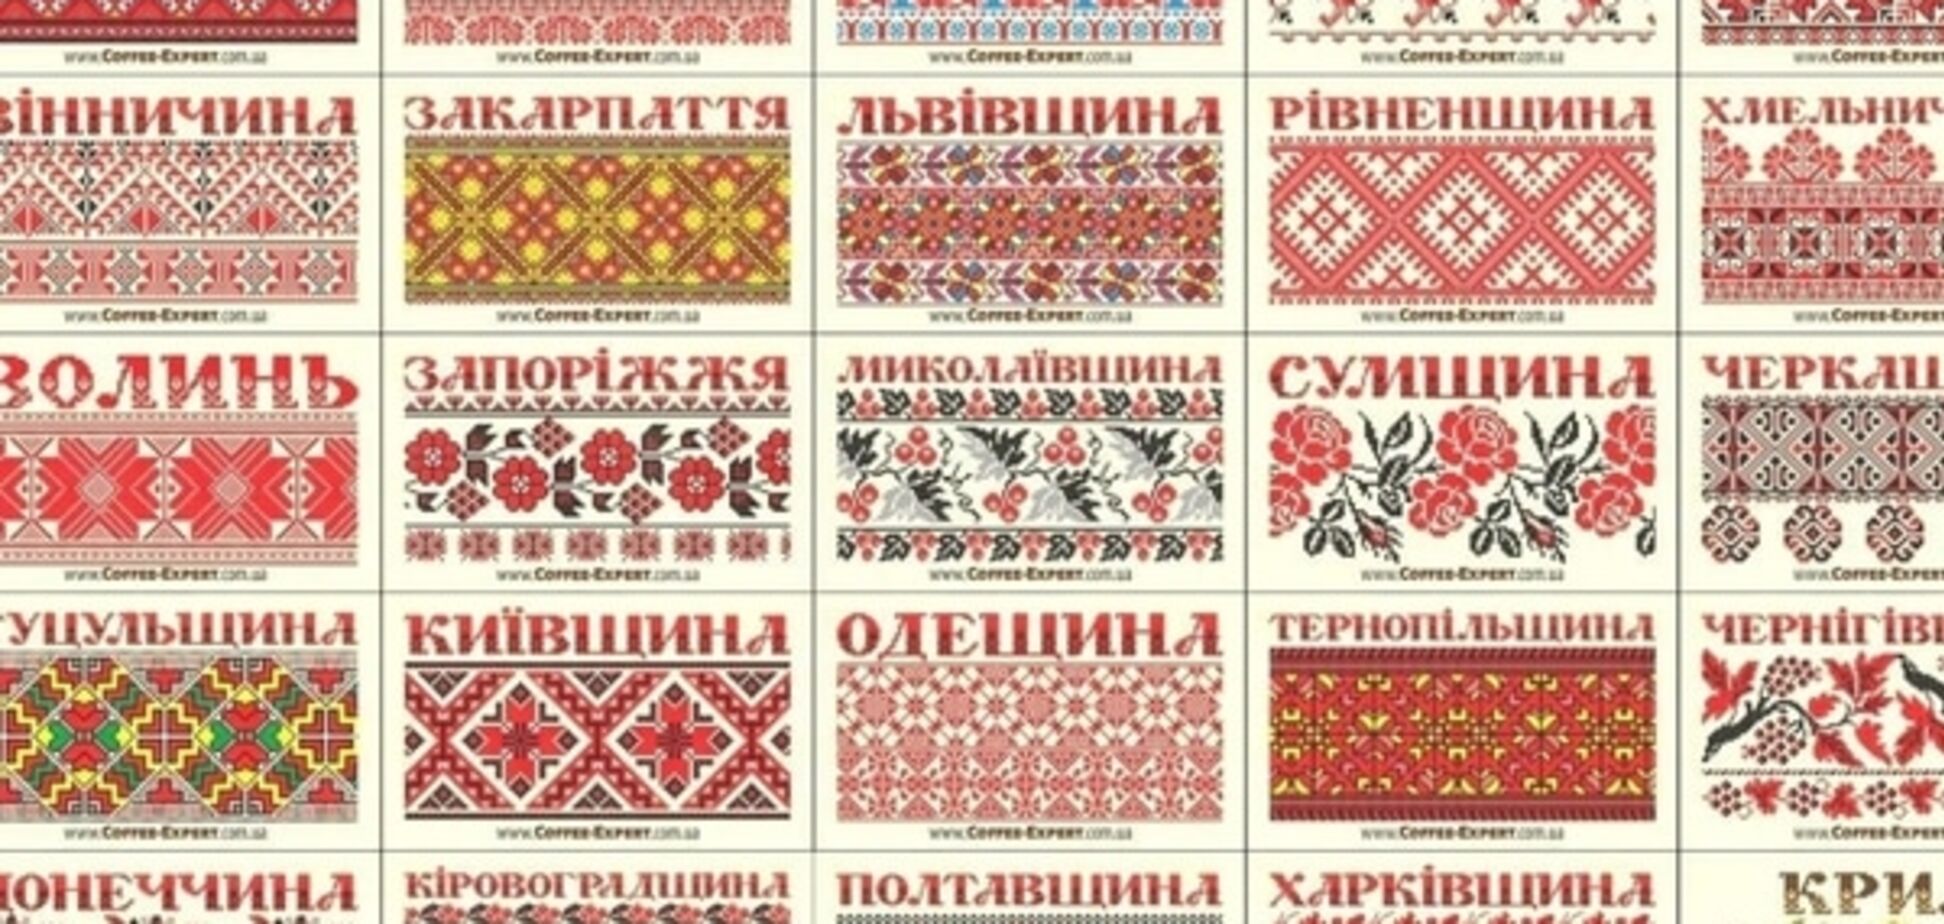 Як виглядає вишиванка у різних куточках України: унікальні орнаменти та візерунки